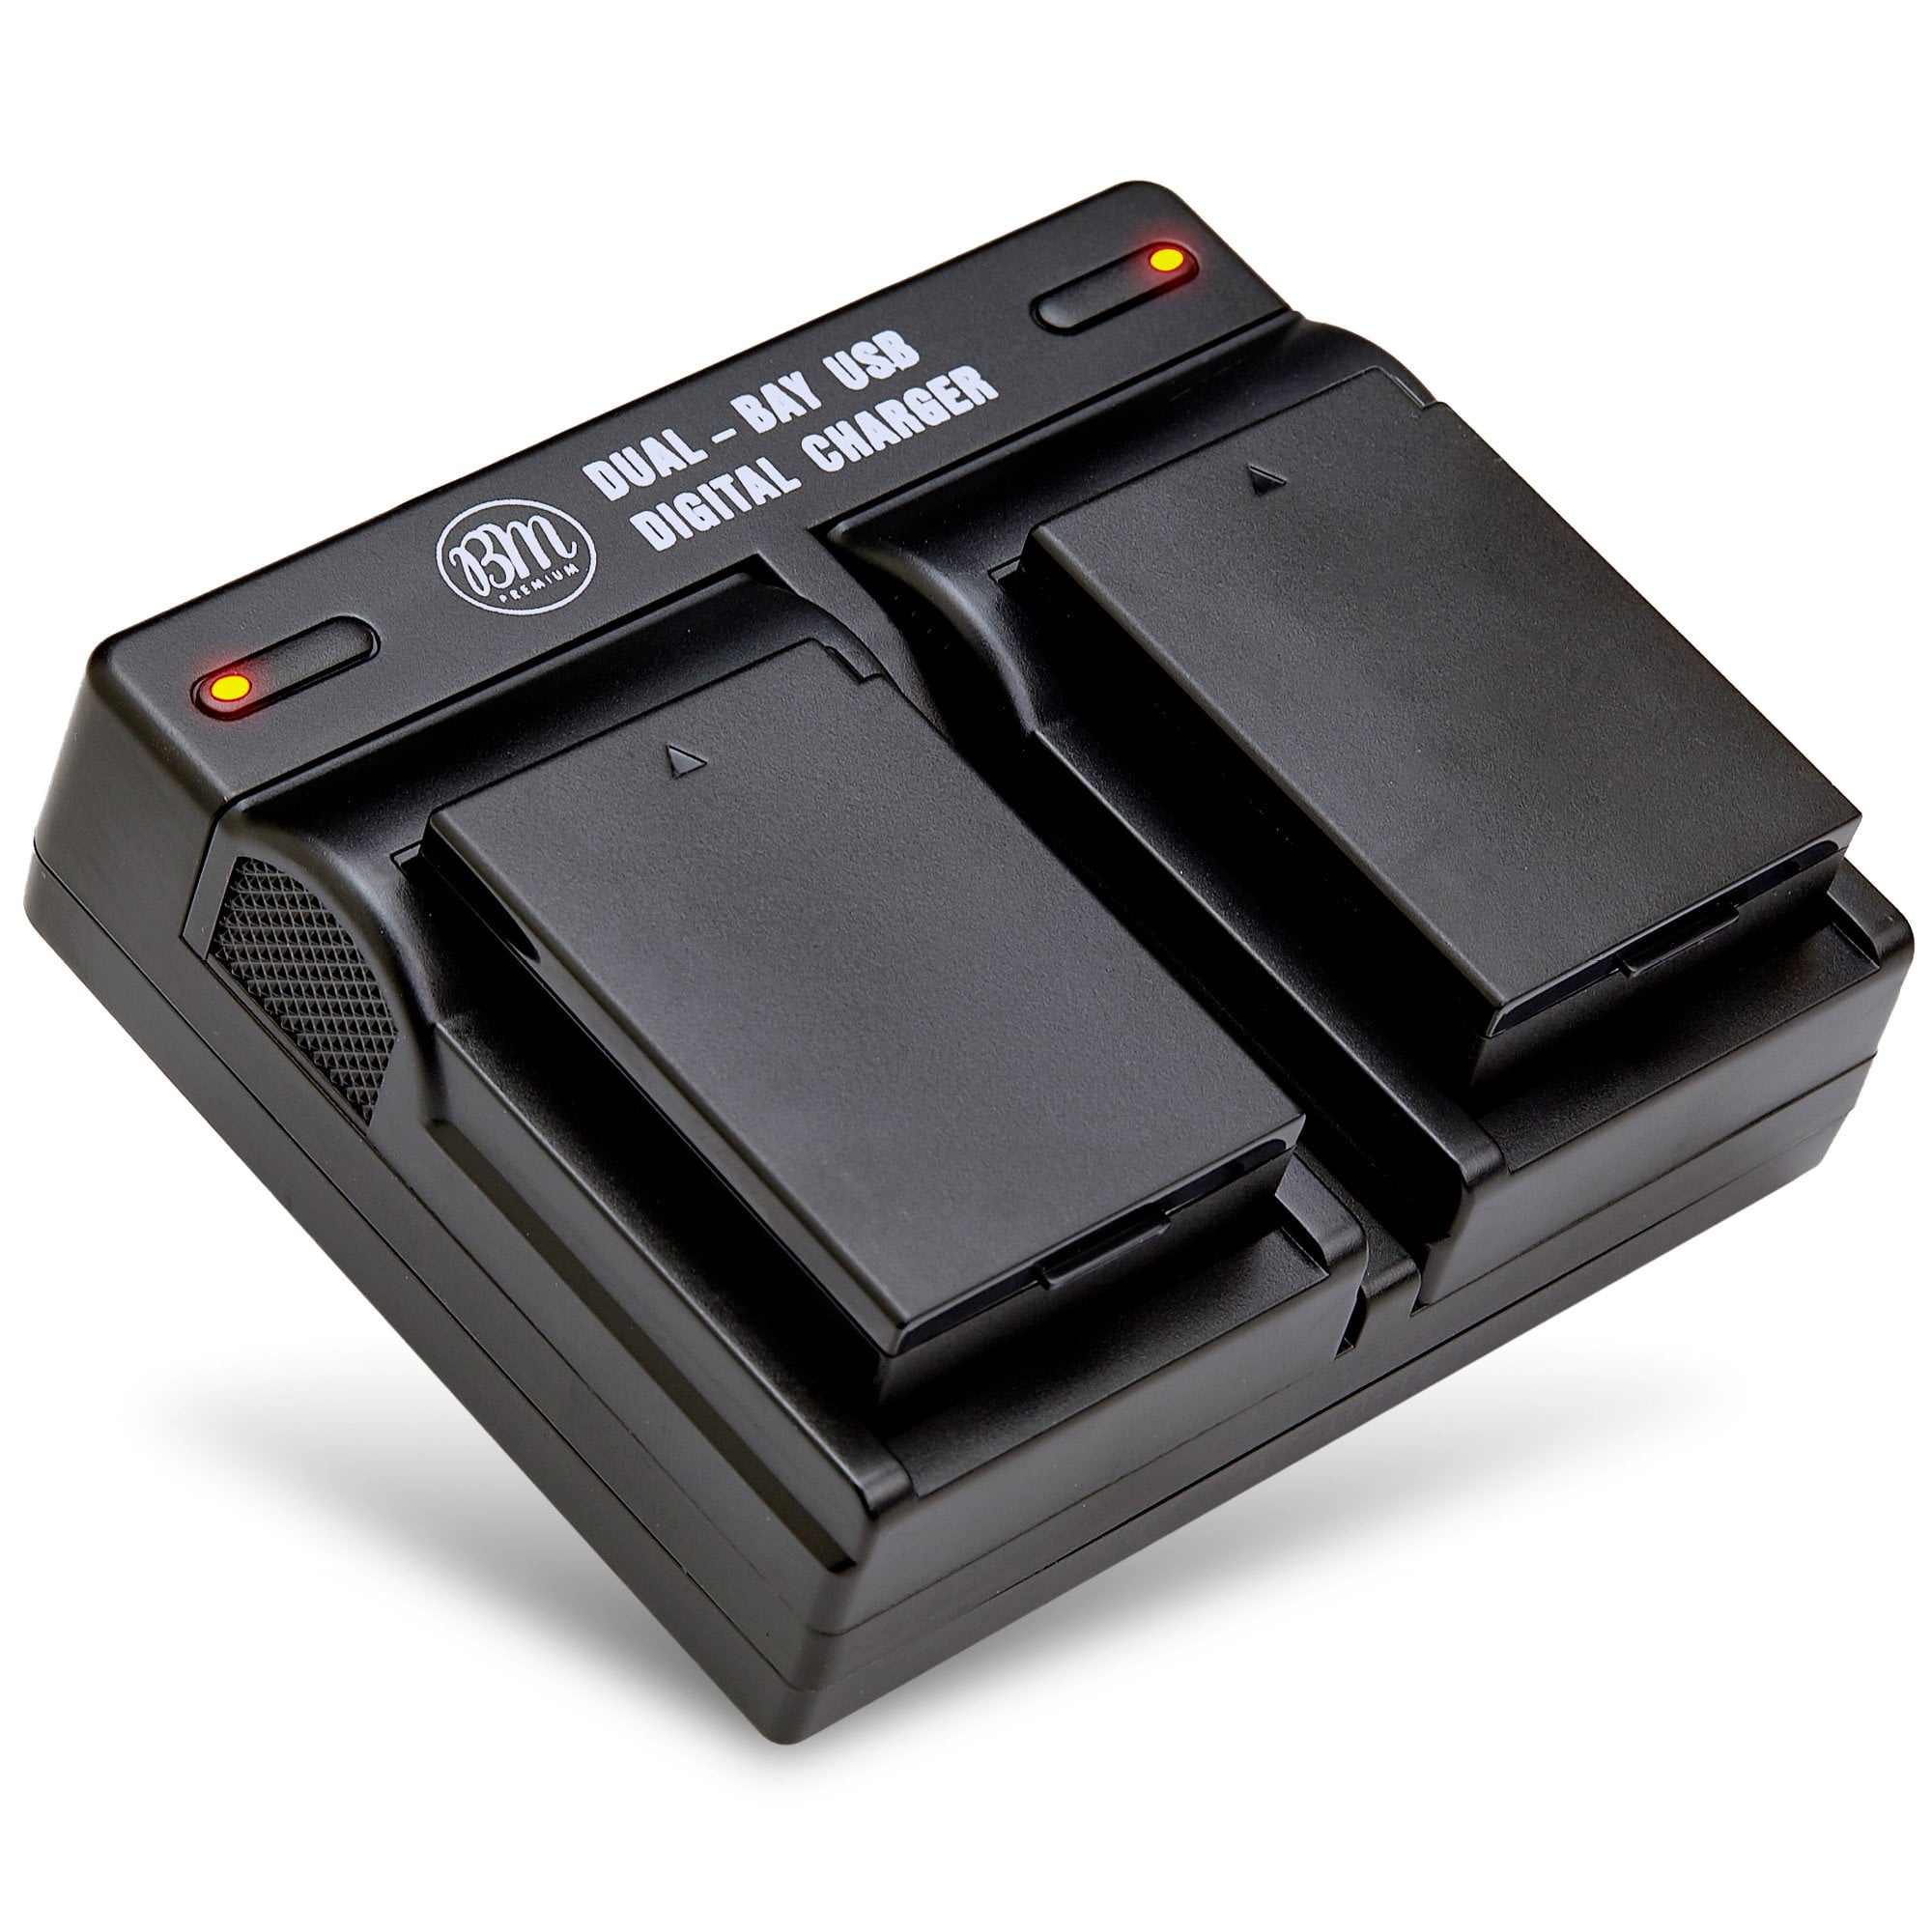 USB/Auto/Secteur 2 Batteries Rebel T5 1300D / Rebel T3 Chargeur pour LP-E10 LPE10 / Canon EOS 1100D 1200D 